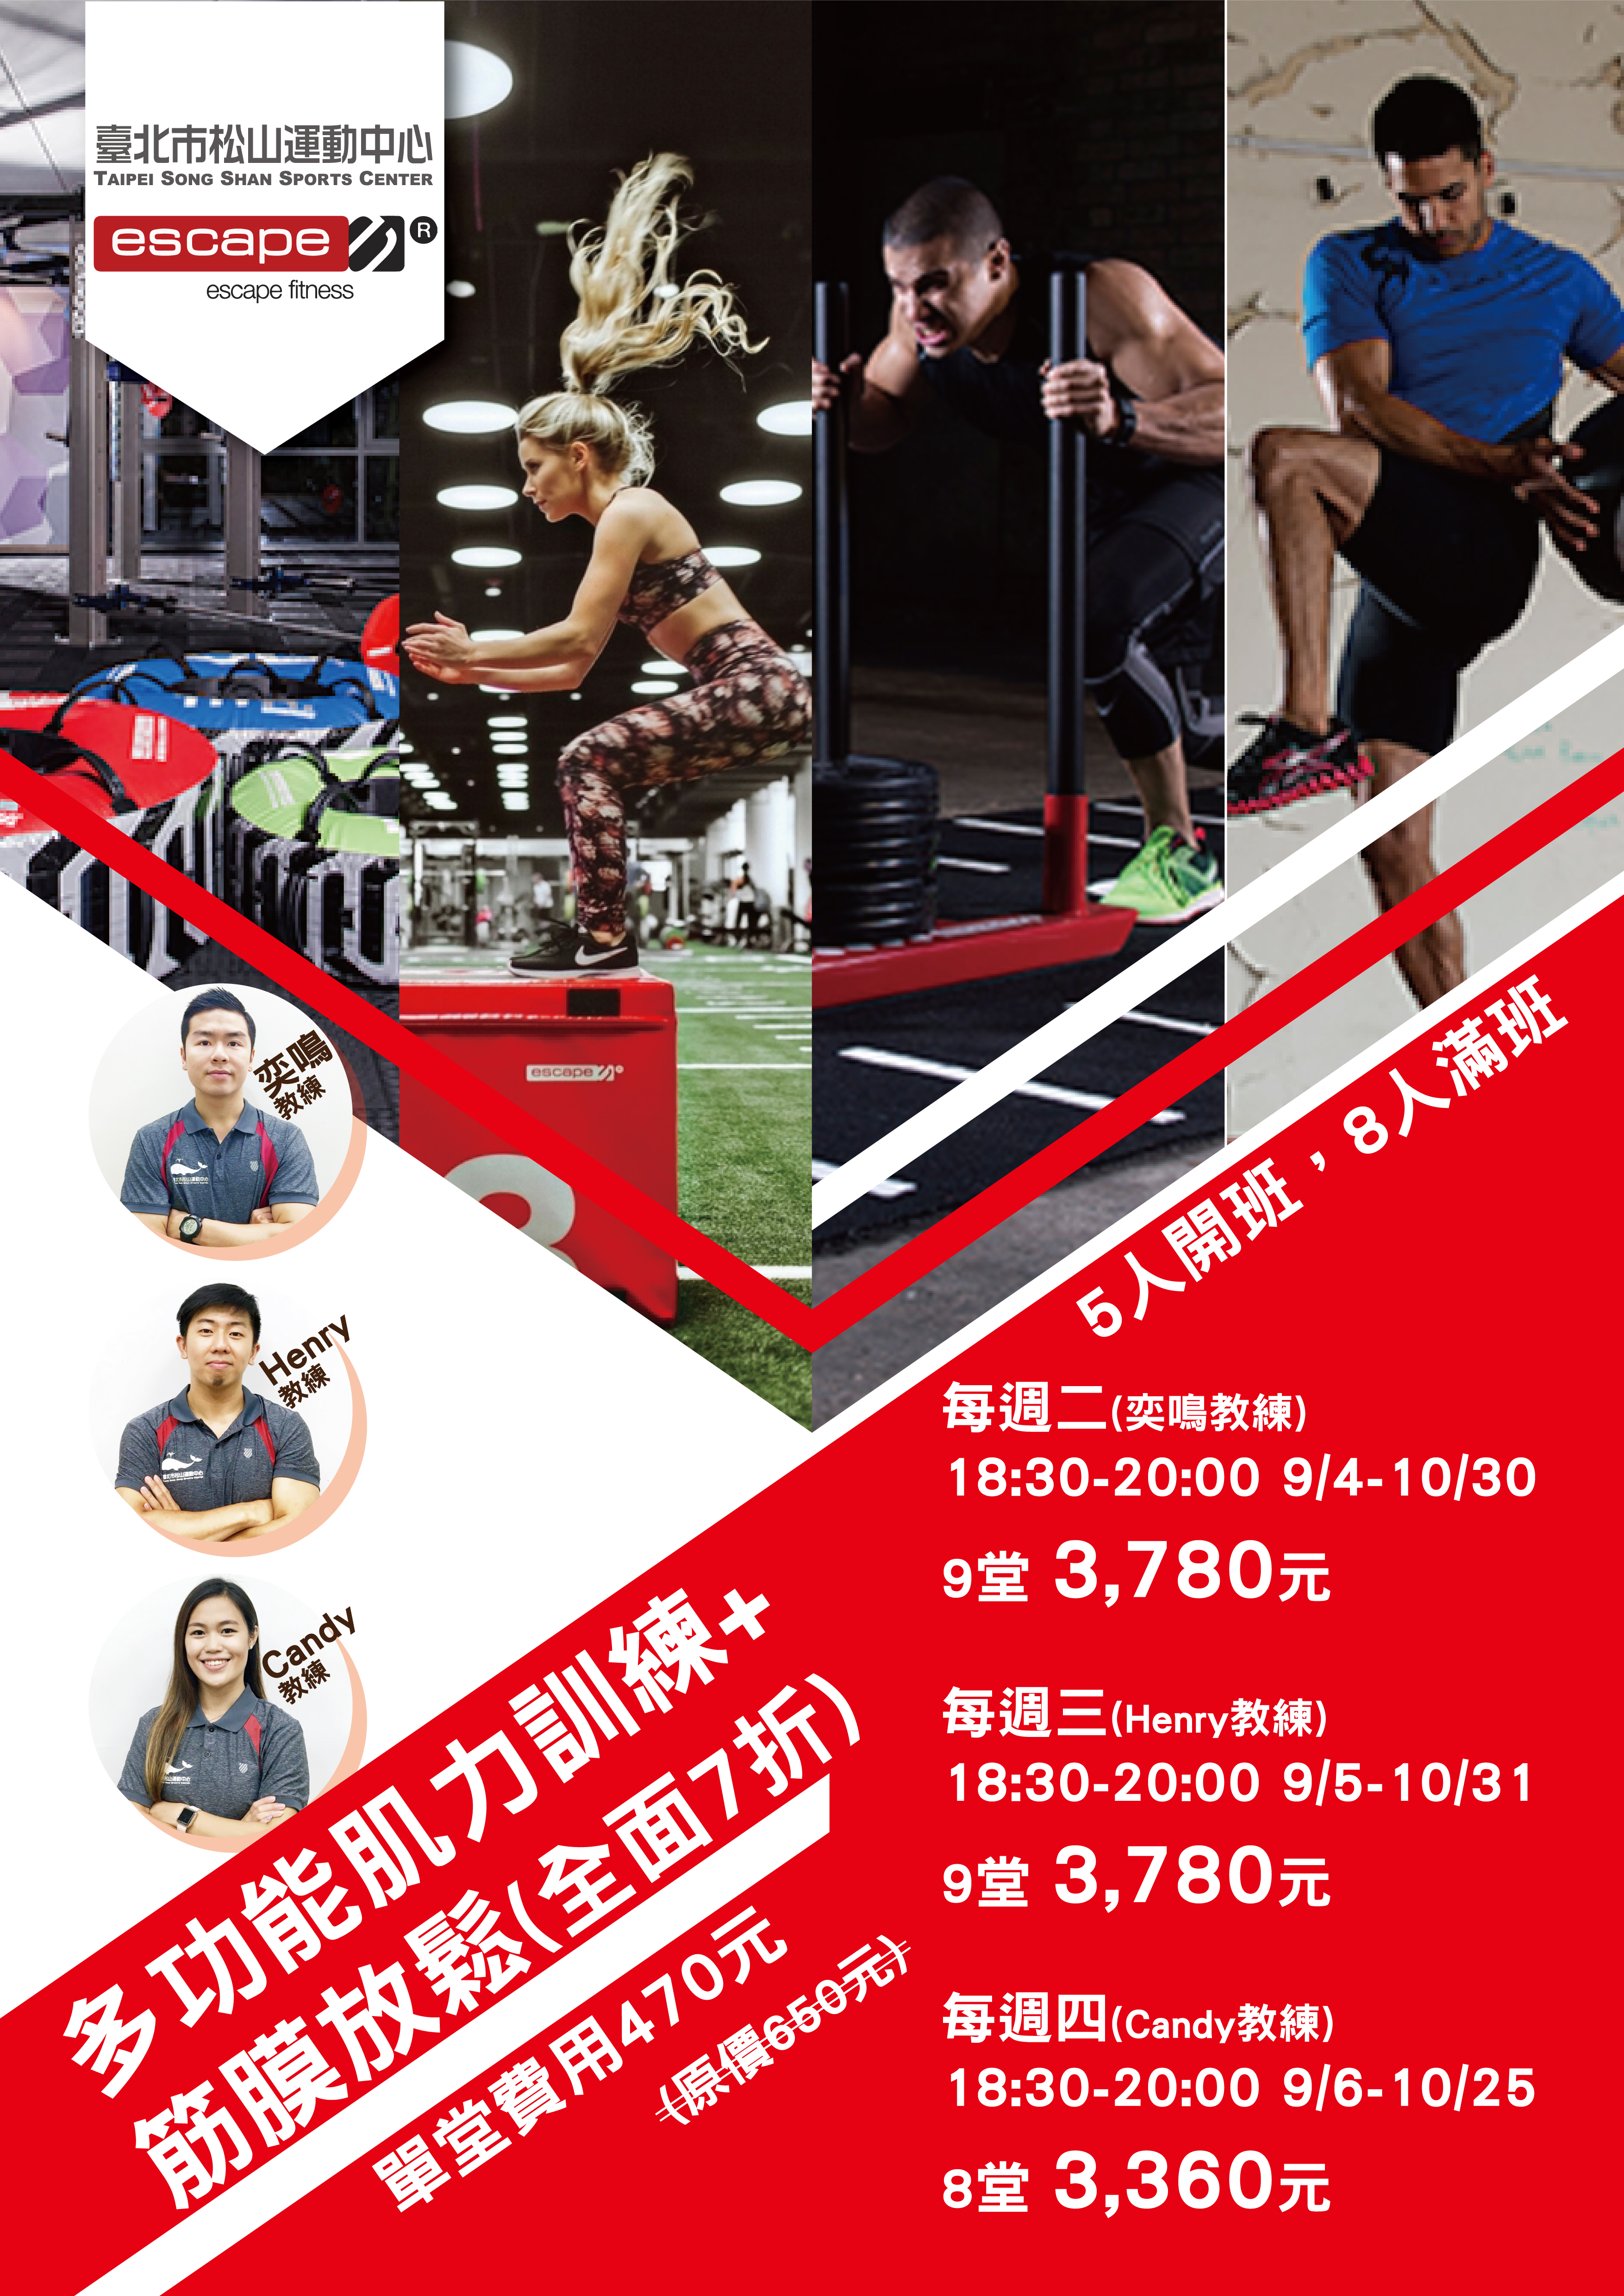 【課程】NEW ESCAPE 全新課程 多功能肌力訓練+筋膜放鬆 | 松山運動中心